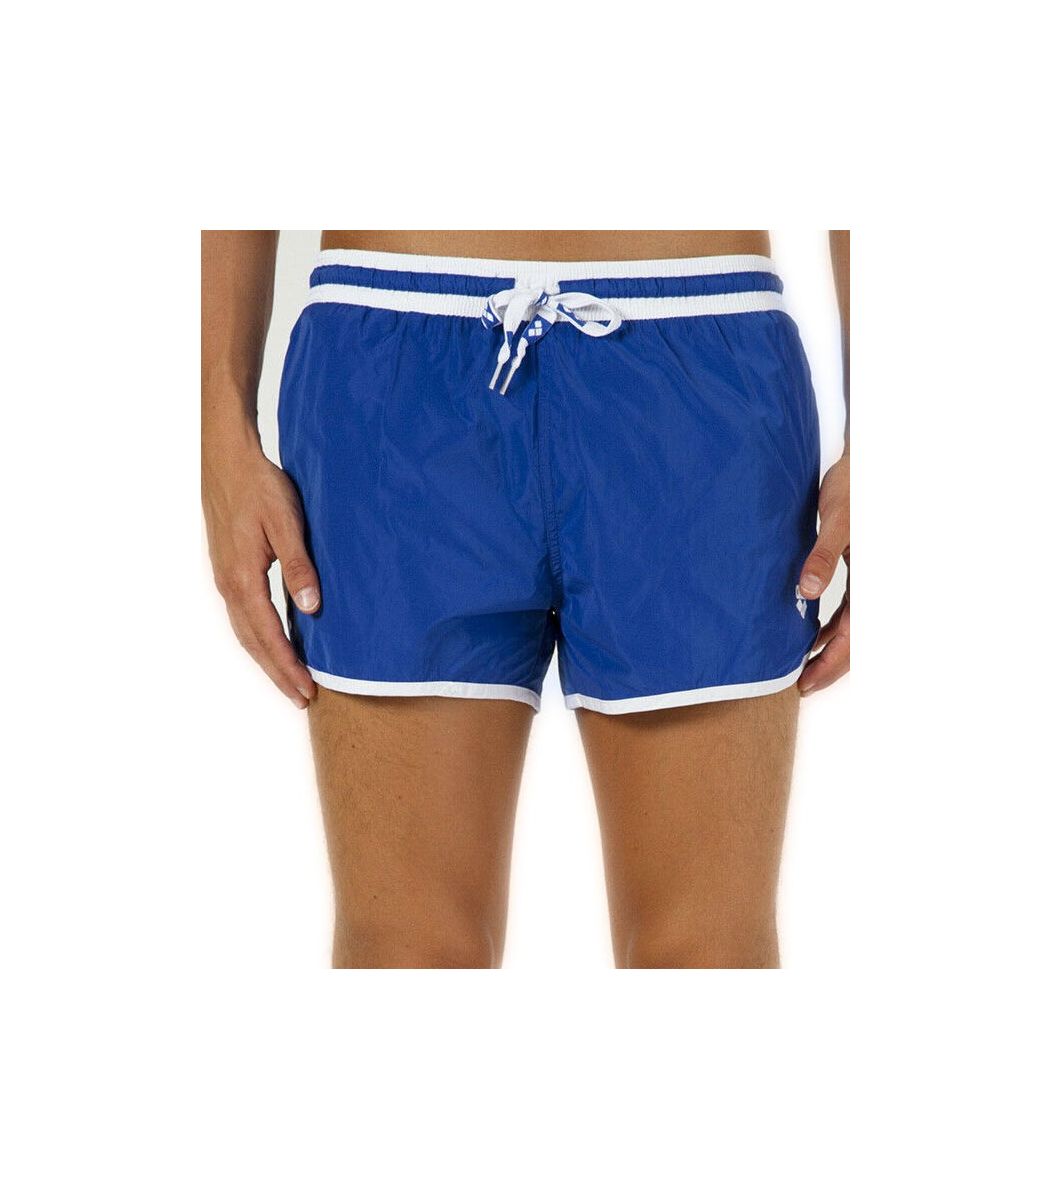  Arena Arena Men swimwear shorts- 9